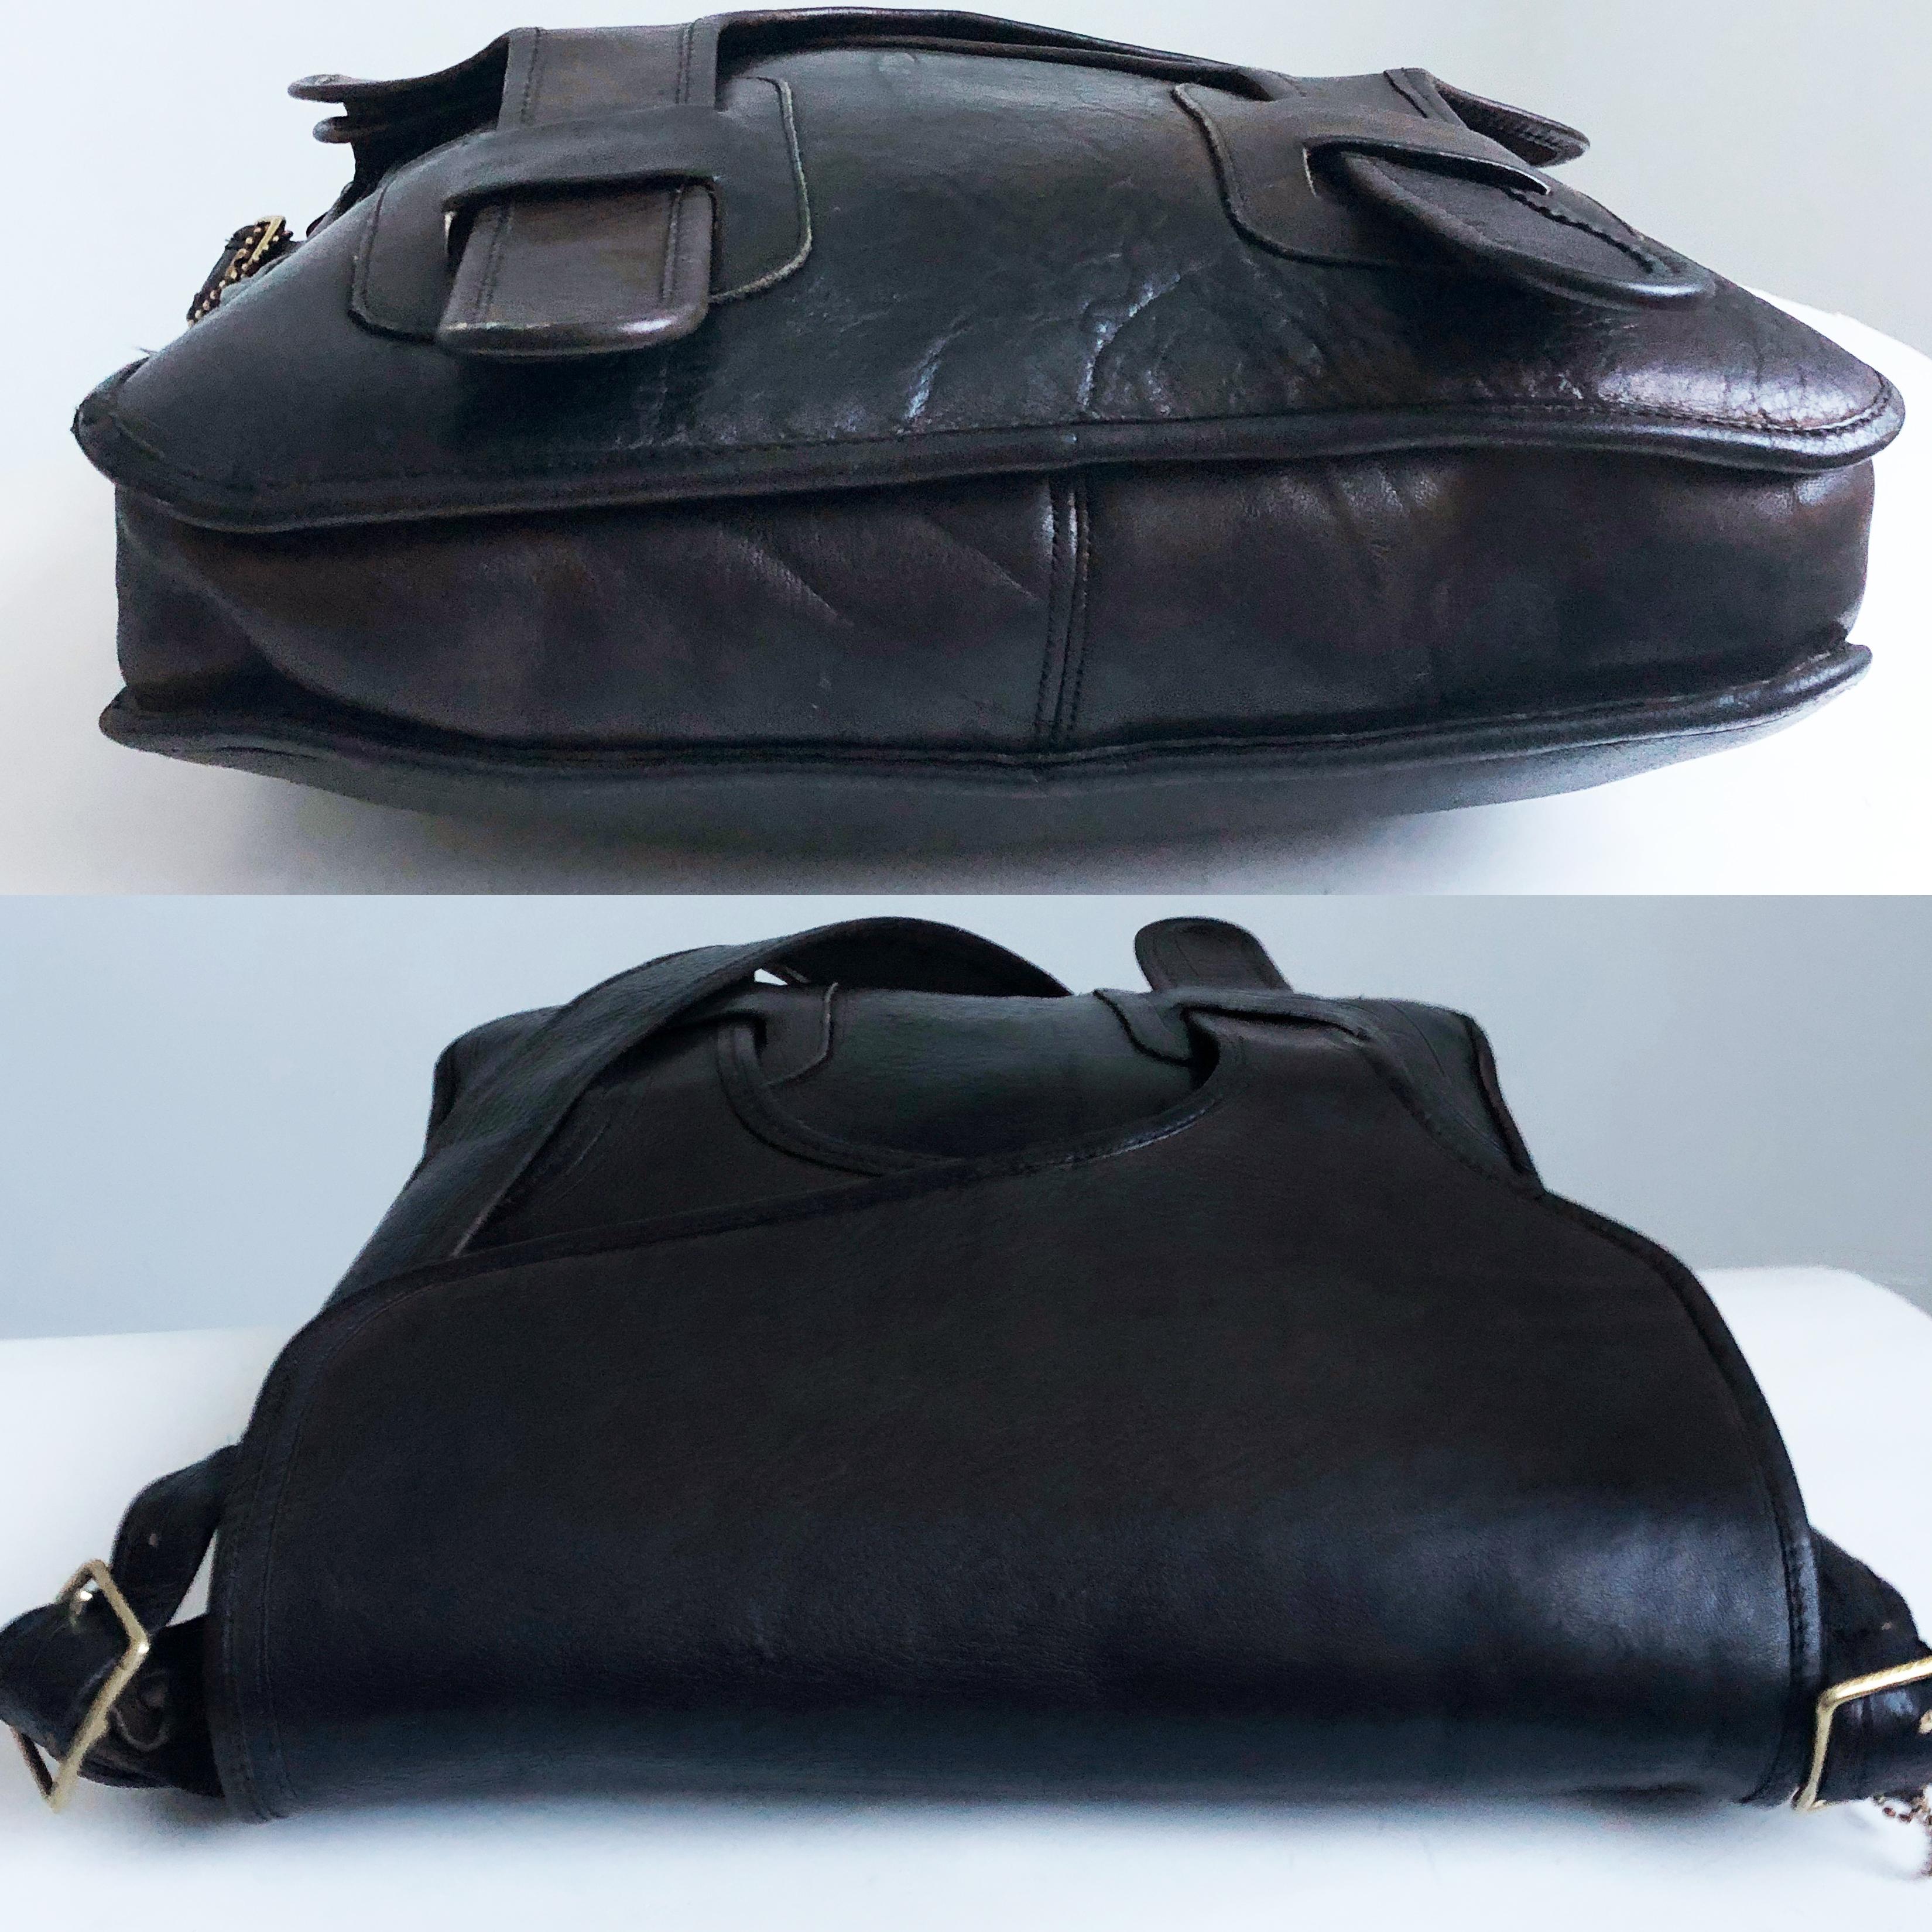 Black Vintage Bonnie Cashin Coach Courier Bag with Double Front Flaps Rare 60s NYC Bag